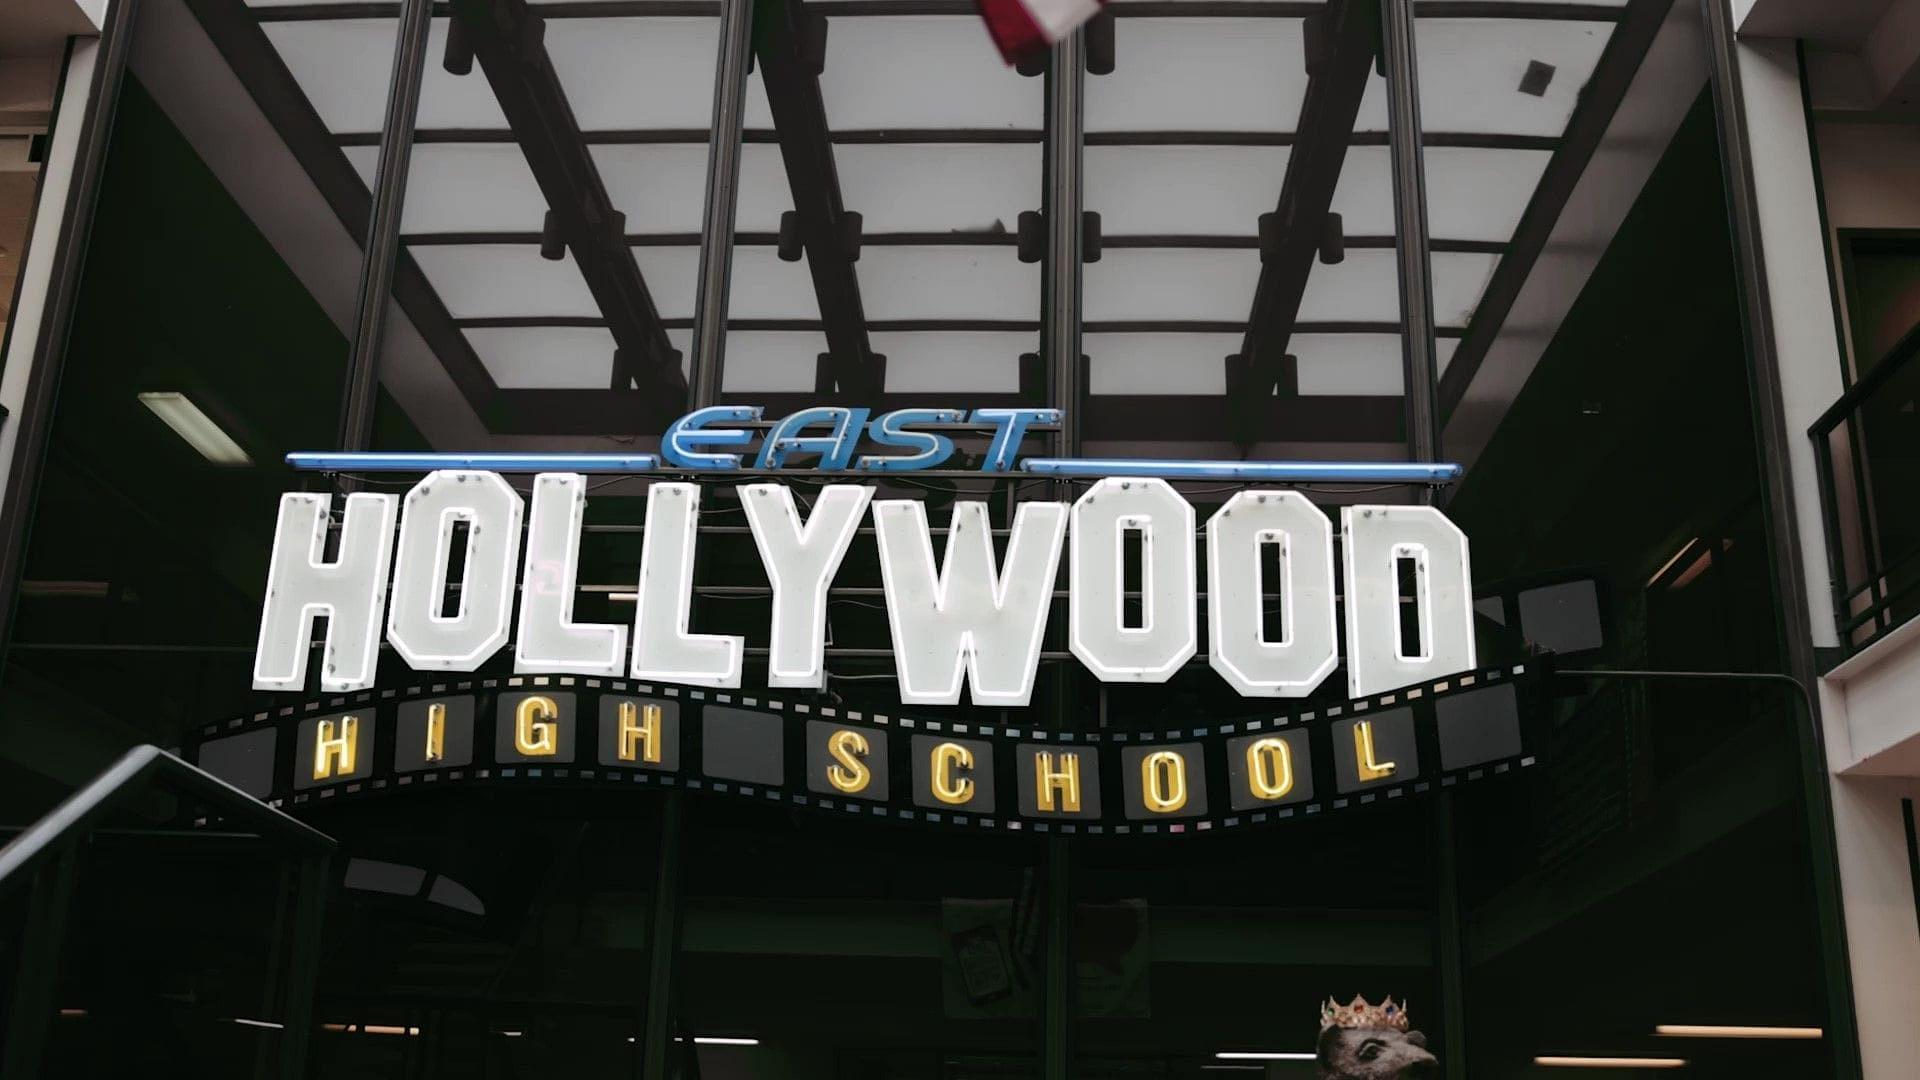 East Hollywood High School